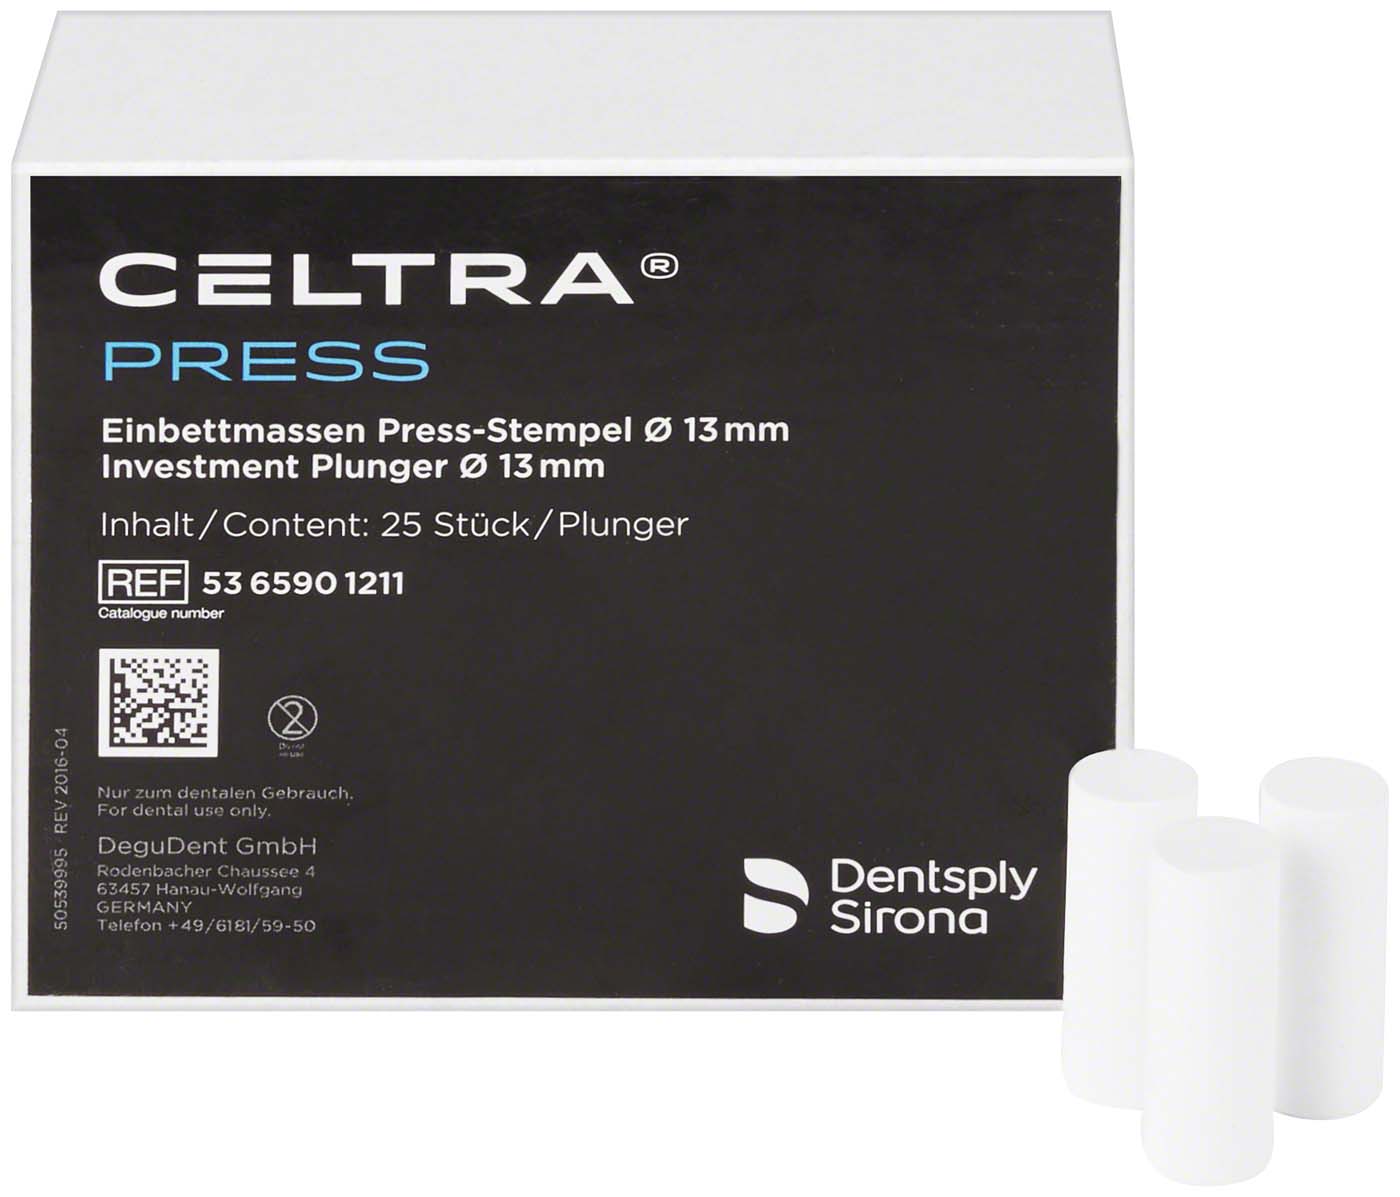 CELTRA® PRESS Stempel Dentsply Sirona